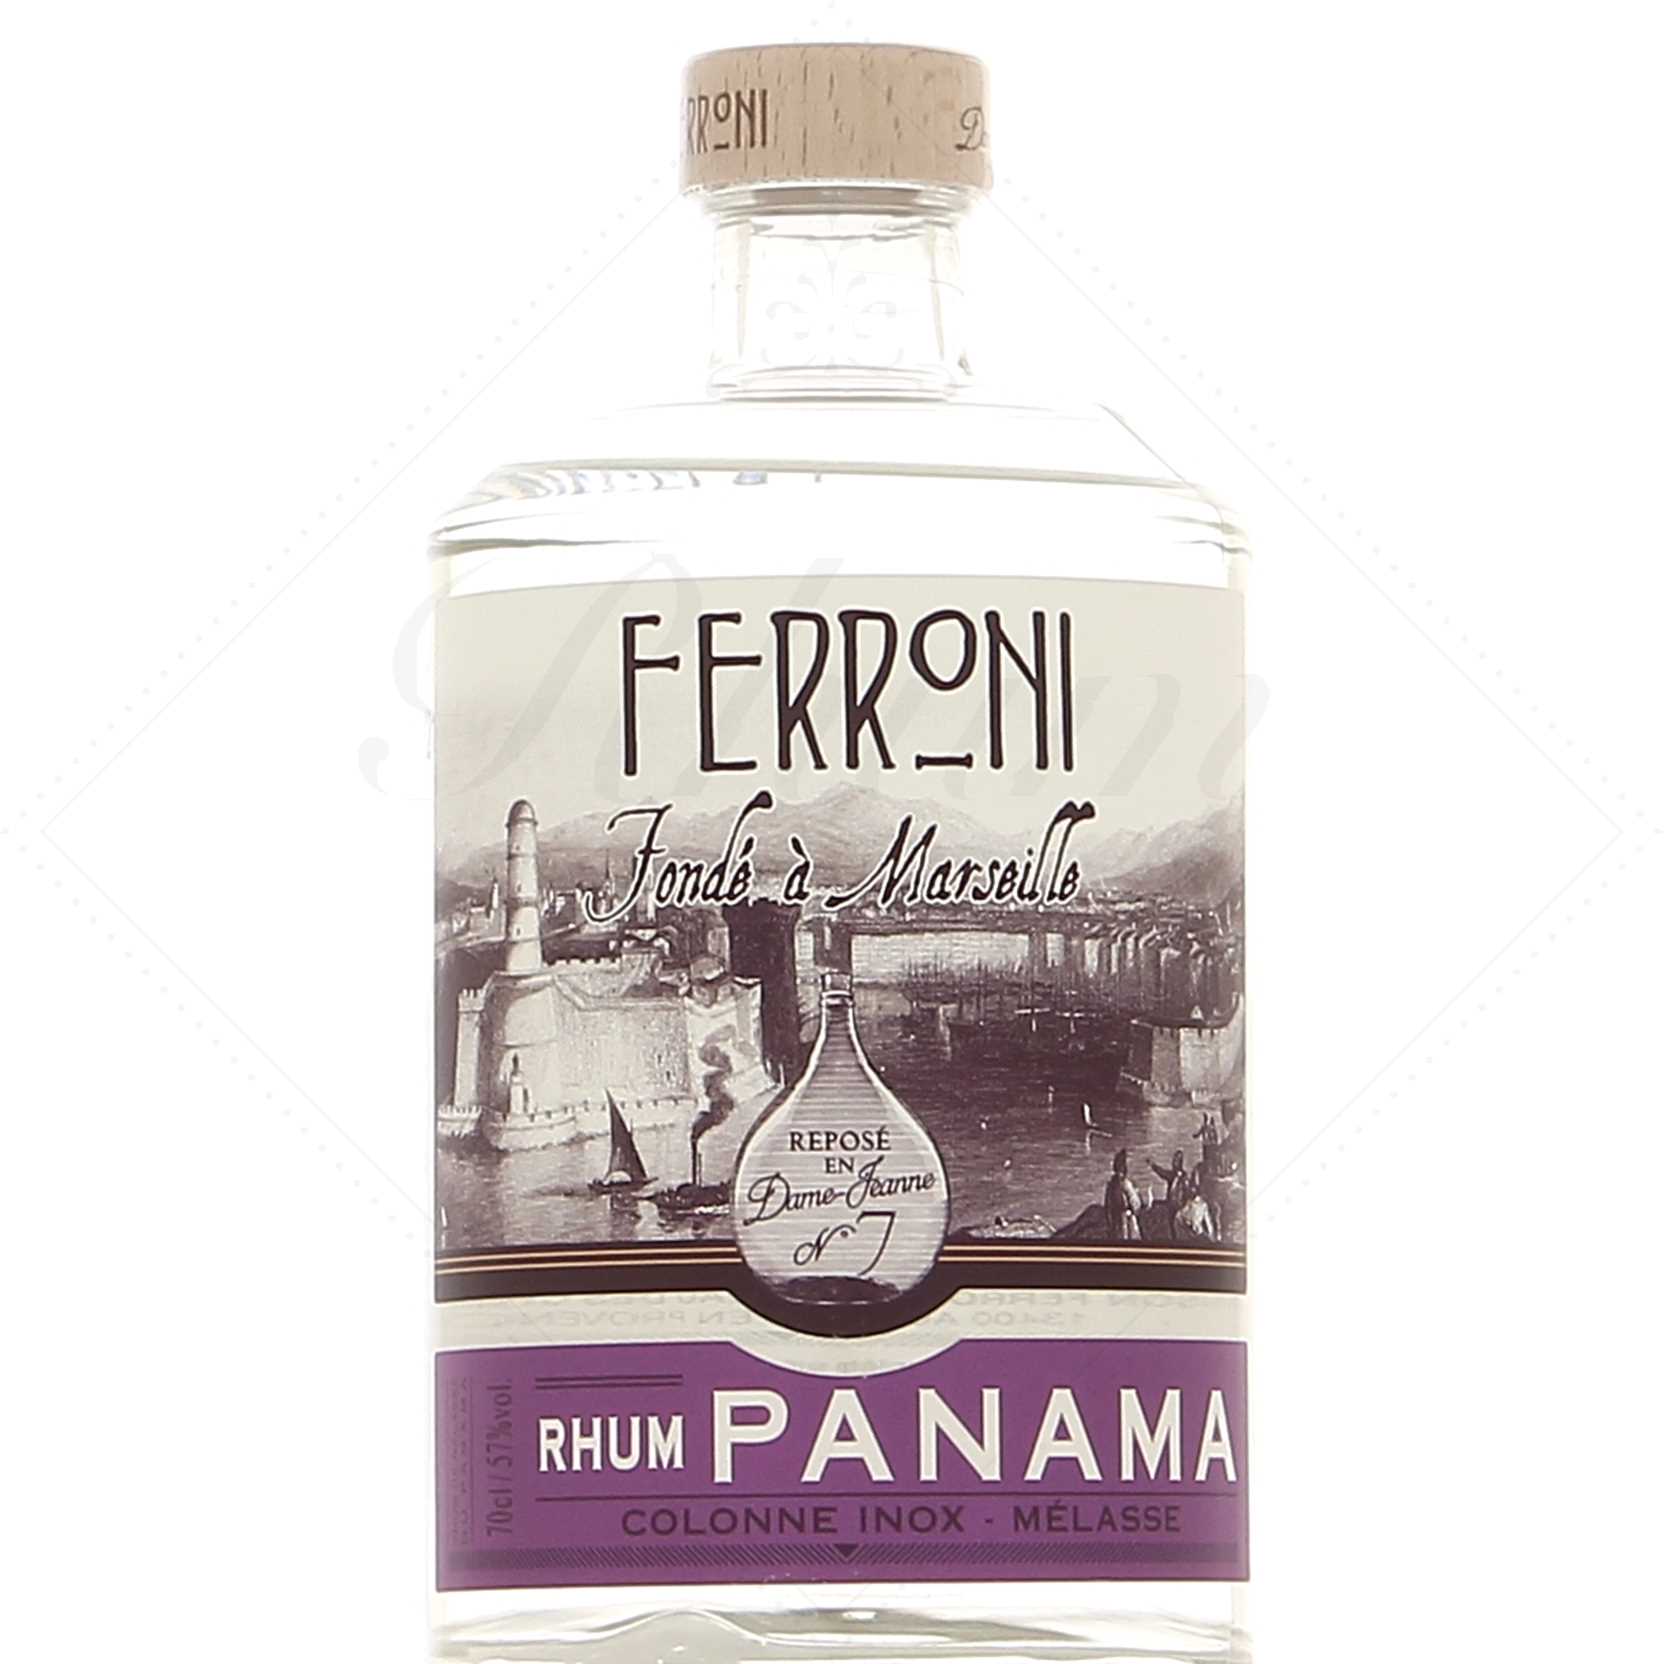 Le coffret Ferroni : idéal pour découvrir la marque